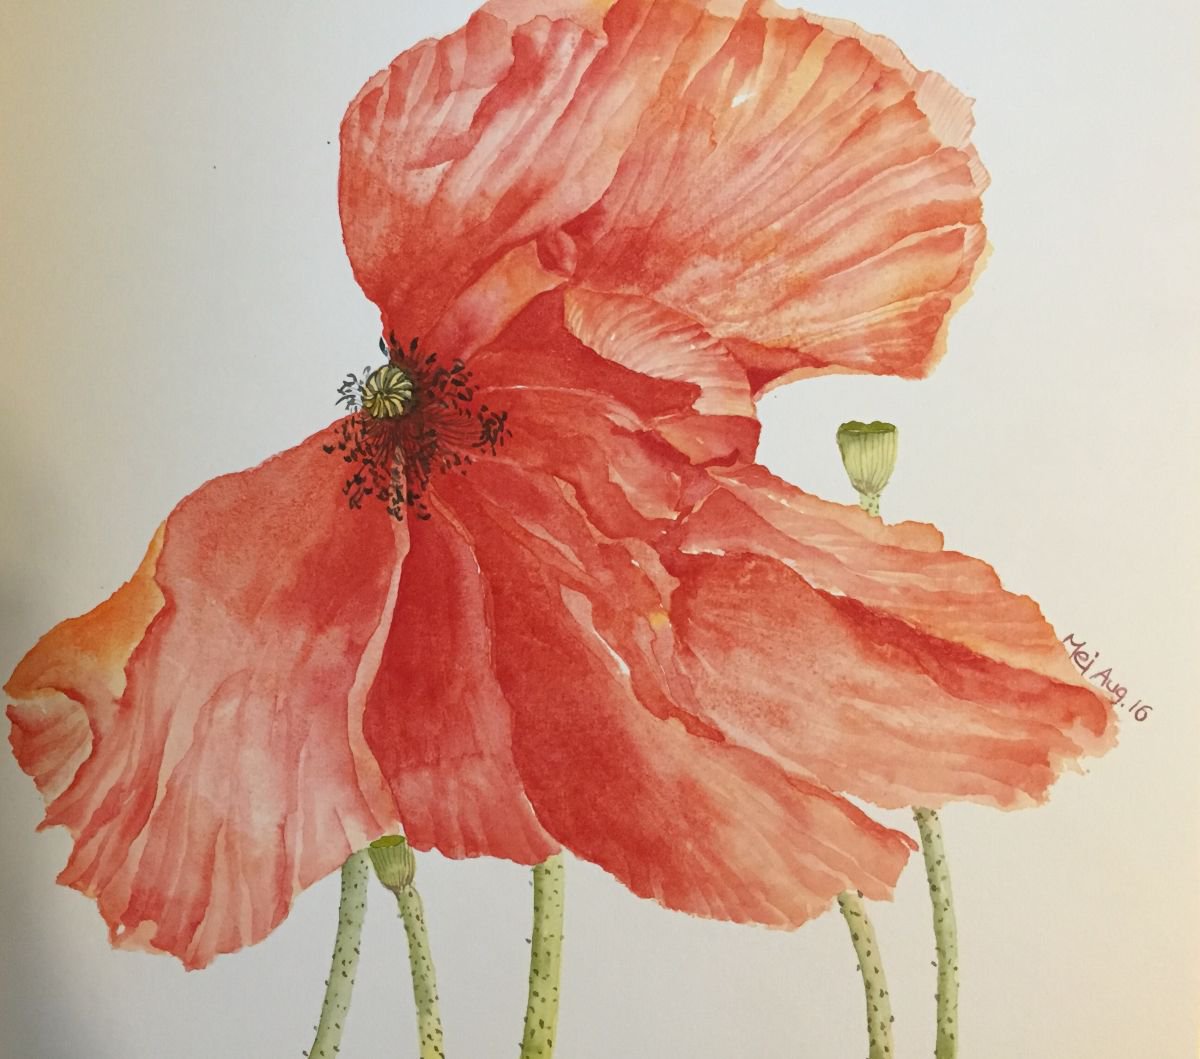 Red Poppie by Angelflower (Sun Mei)